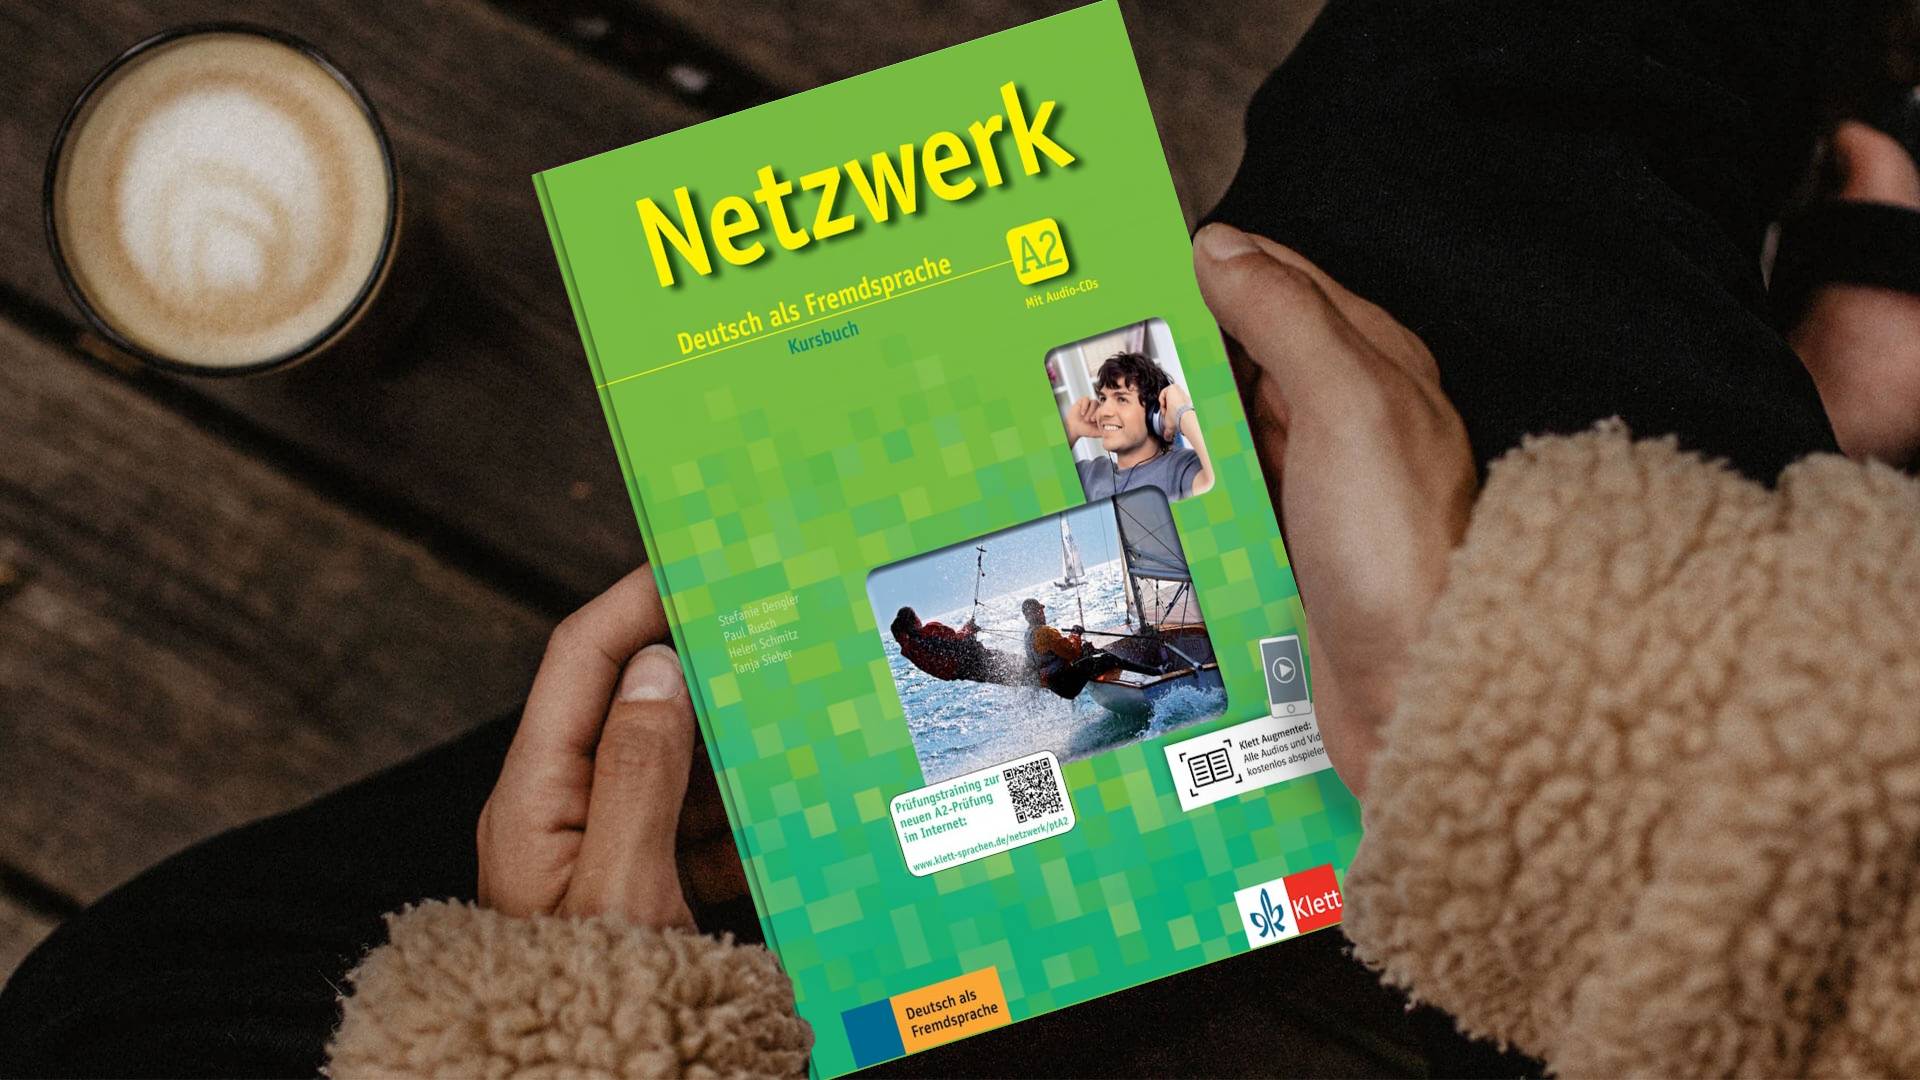 خرید کتاب زبان | زبان استور | Netzwerk A2 | کتاب زبان آلمانی